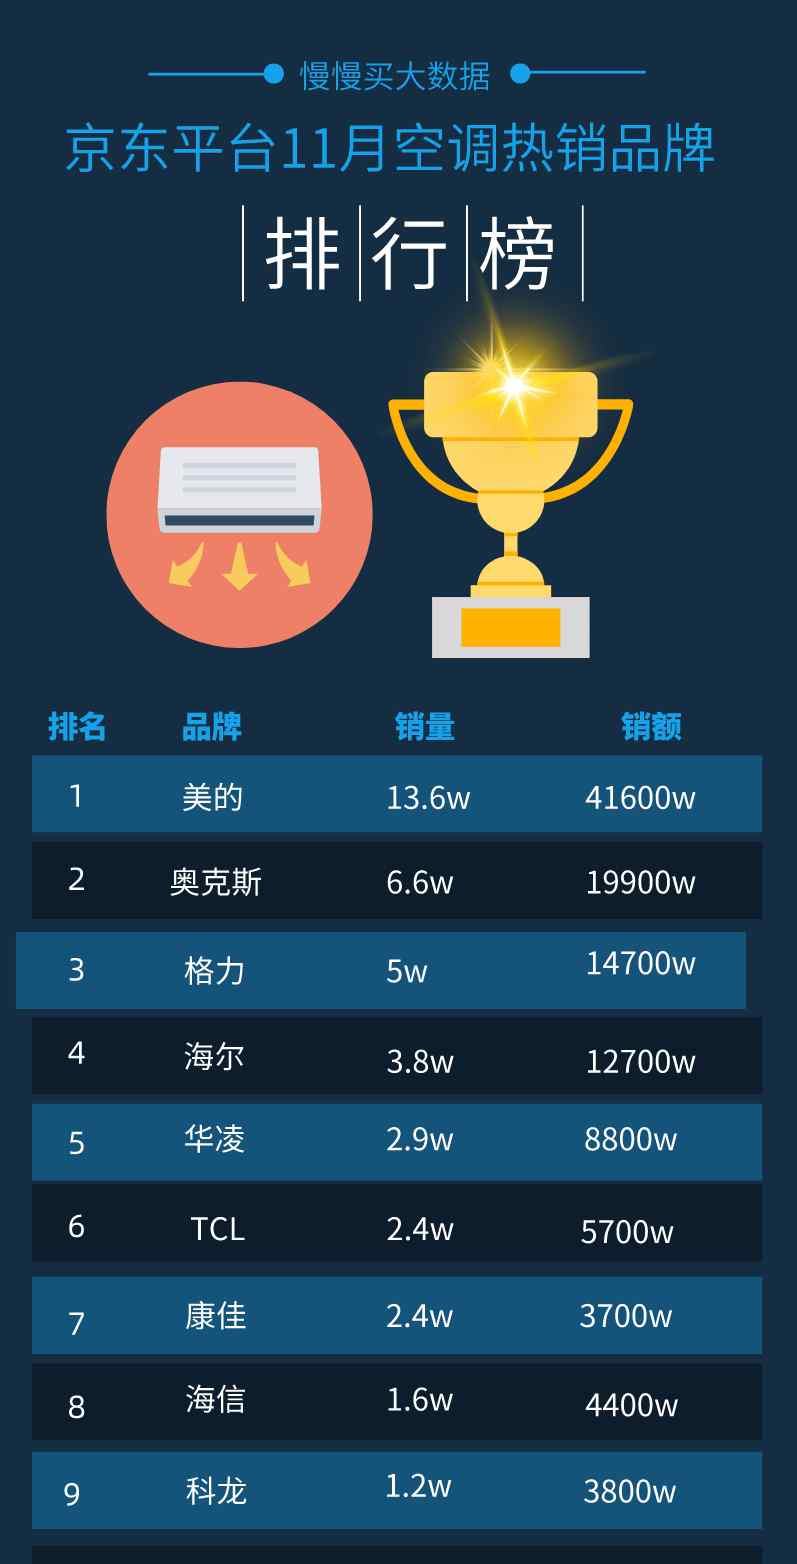 空调销量排名 2020年11月京东平台空调销量排行榜